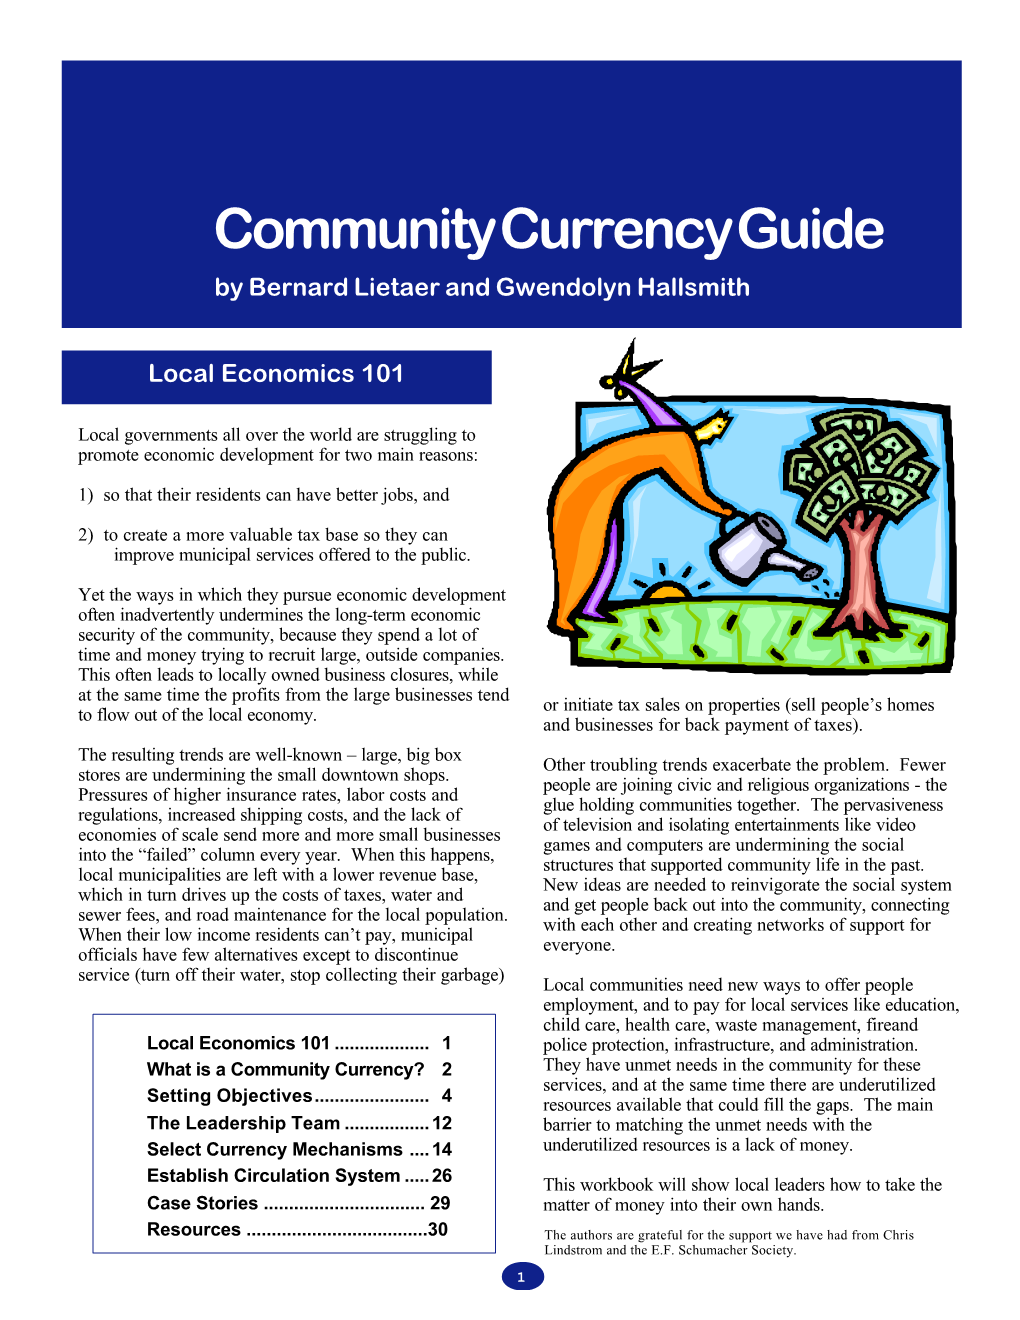 Community Currency Guide by Bernard Lietaer and Gwendolyn Hallsmith